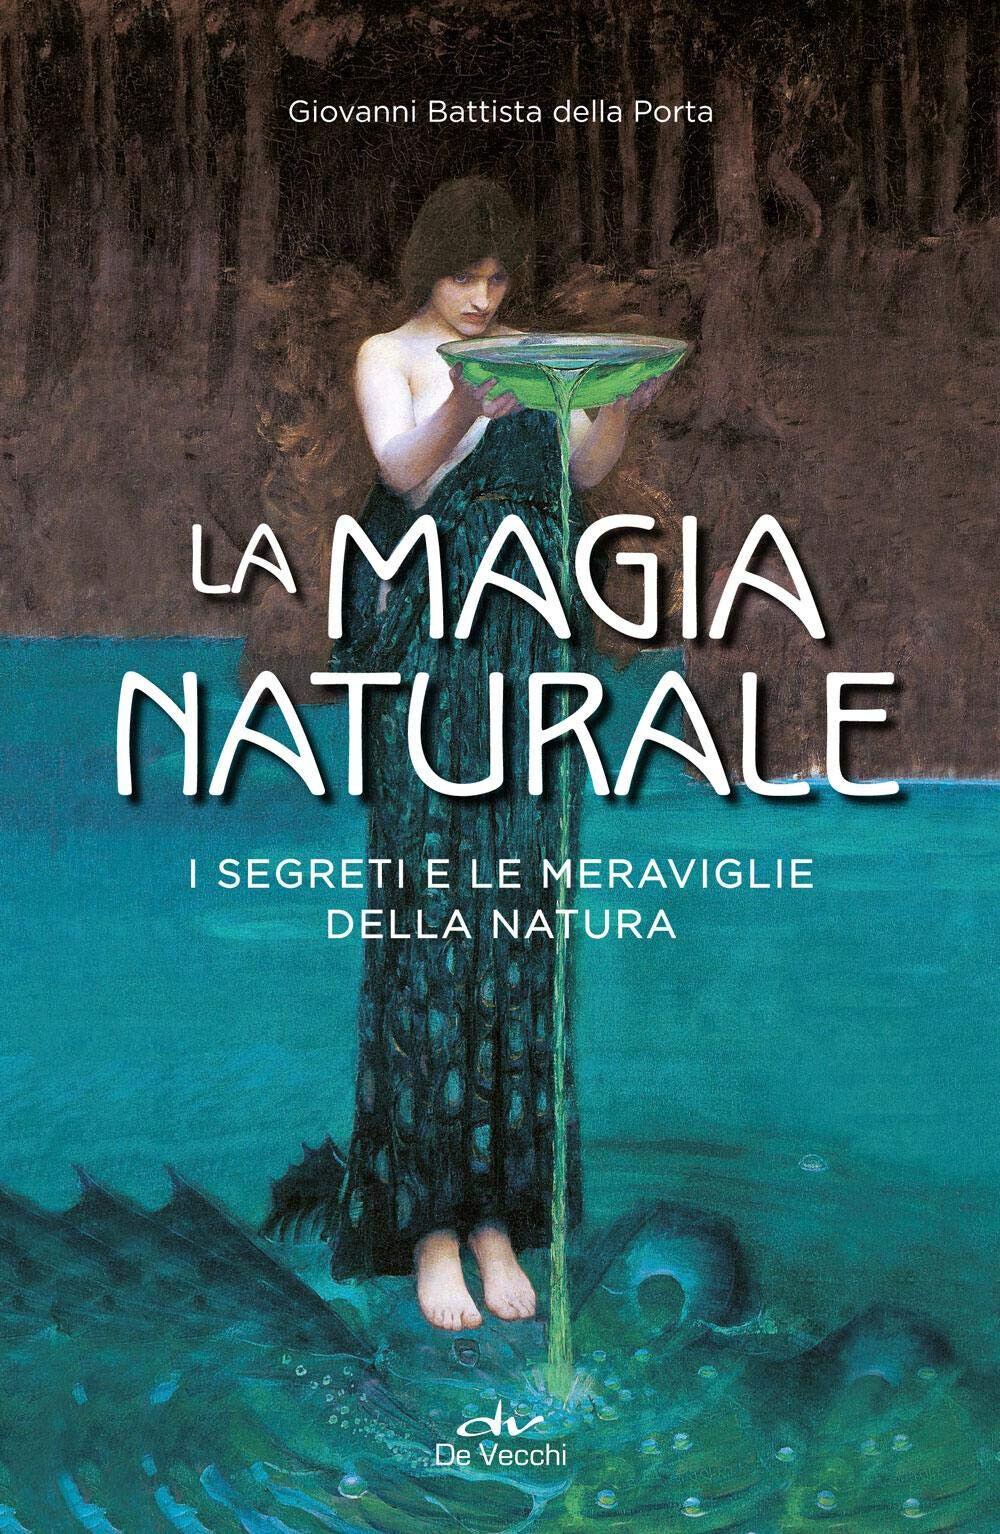 La magia naturale - G. Battista Della Porta - De Vecchi, 2019